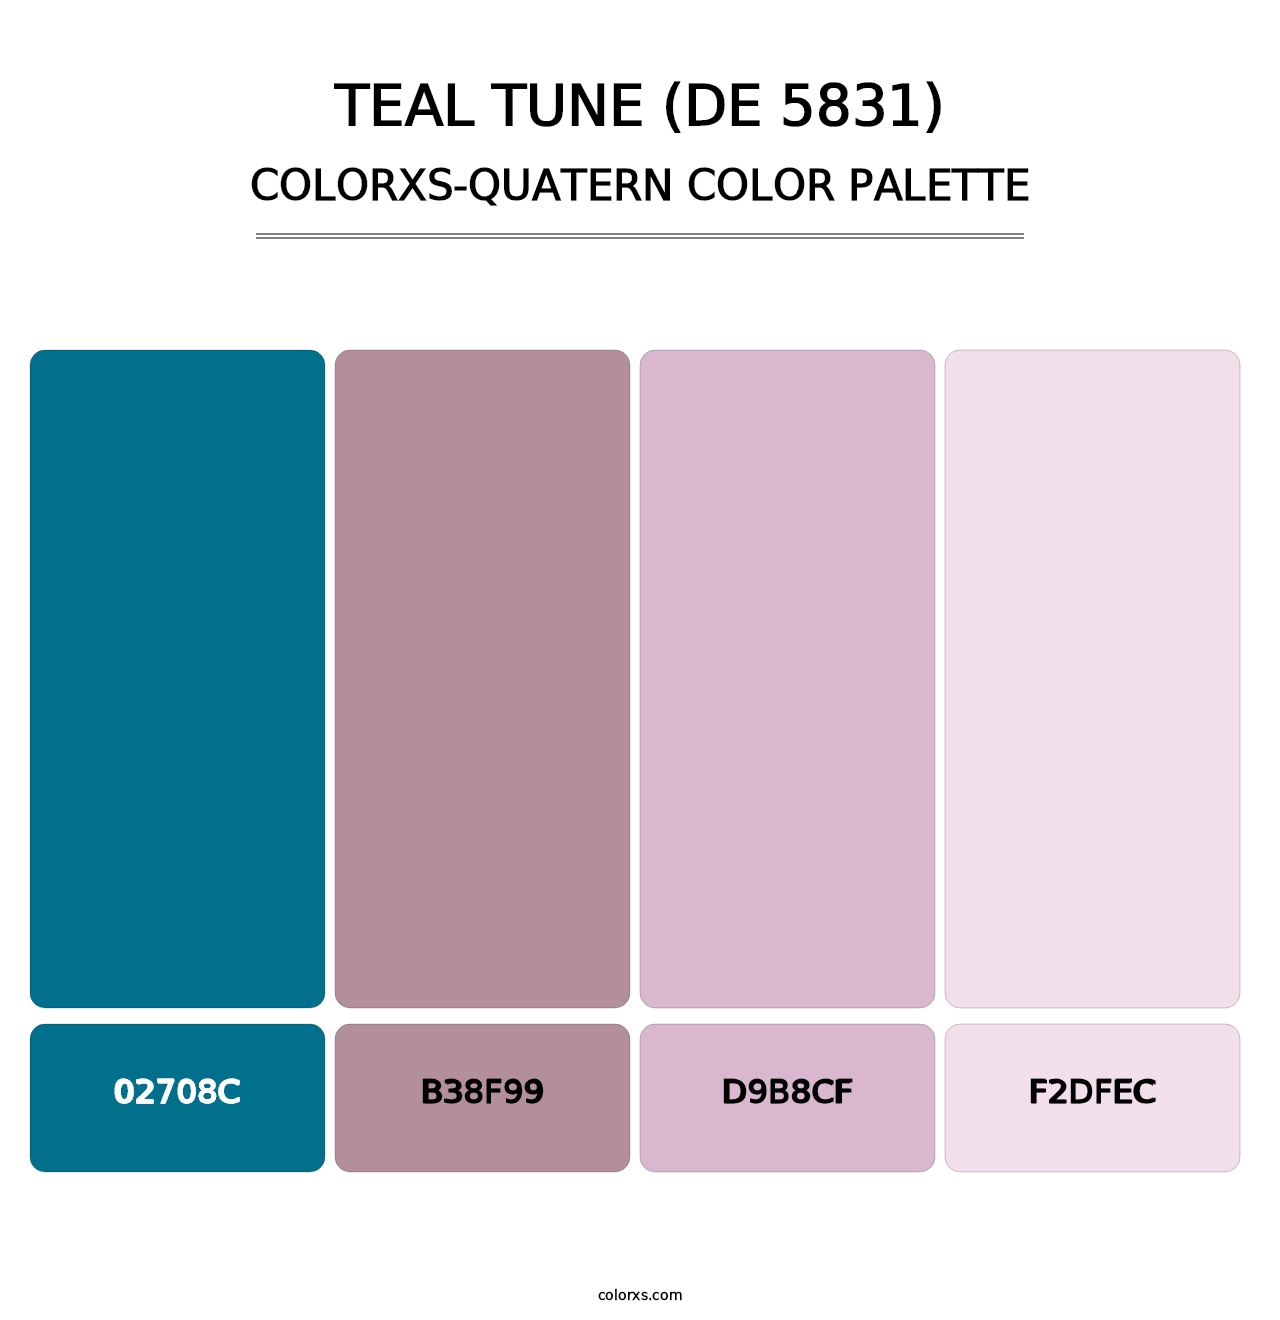 Teal Tune (DE 5831) - Colorxs Quatern Palette